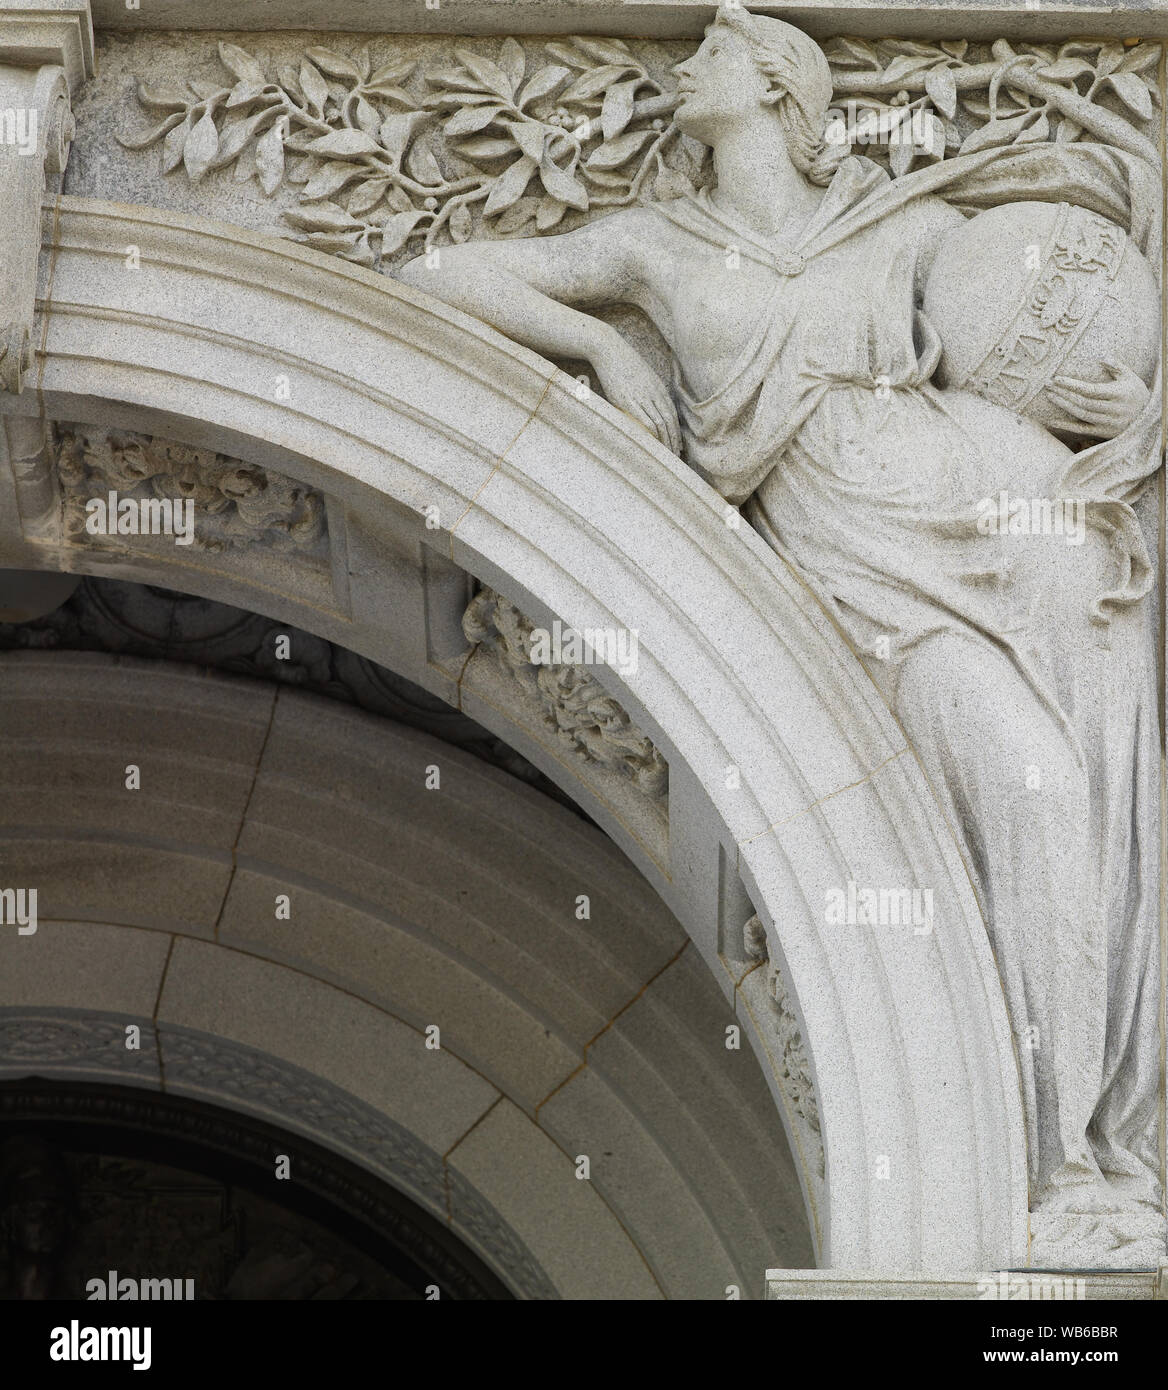 Außenansicht, Eingangsportal. Granit Skulptur mit weiblichen Figur aus Wissenschaft (mit einem himmelsglobus), von Bela Lyon Pratt. Bibliothek des Kongresses Thomas Jefferson, Washington, D.C. Stockfoto